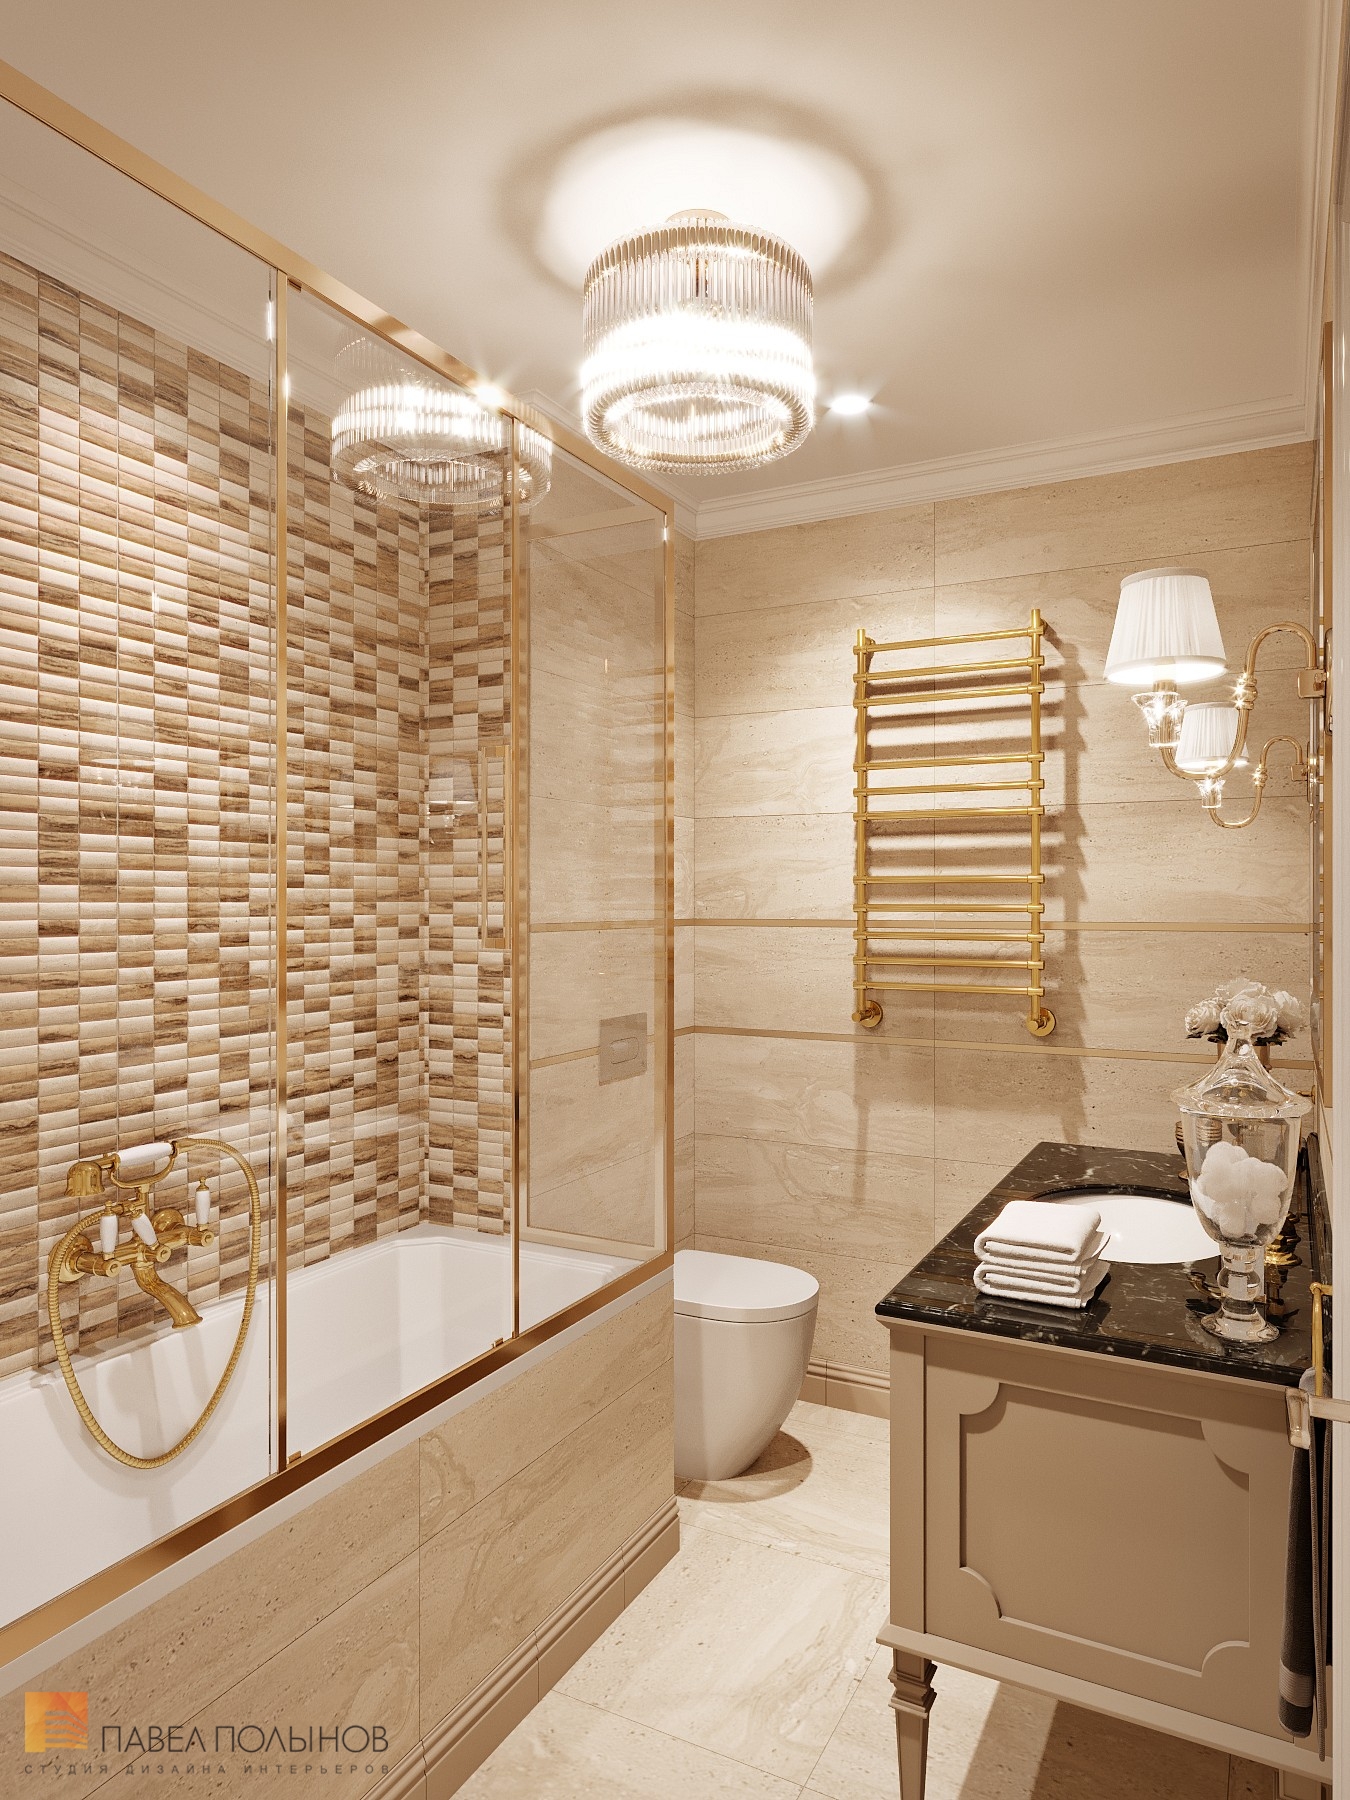 Фото ванная комната из проекта «Интерьер квартиры 140 кв.м. в стиле неоклассики»